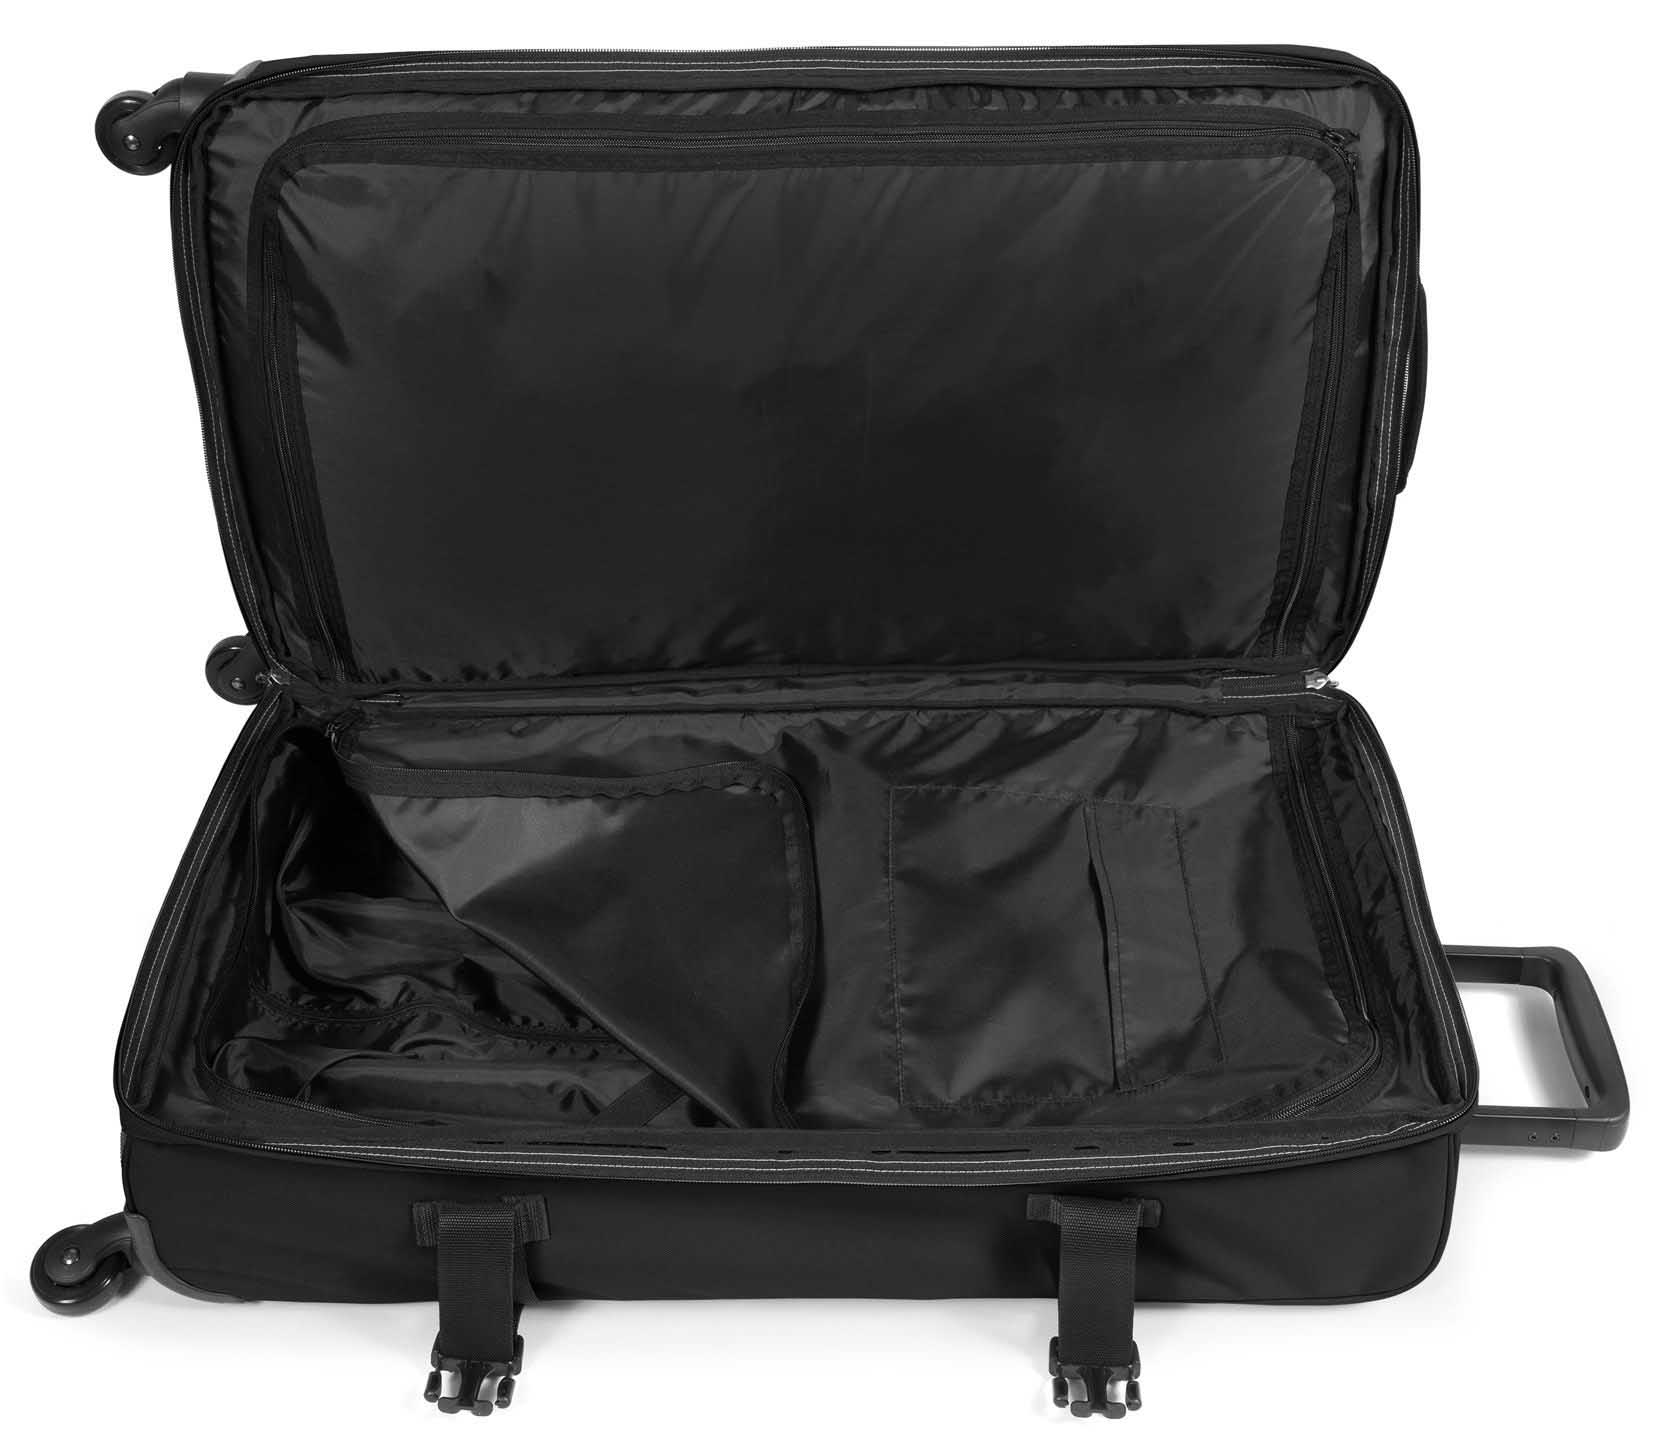 Eastpak Trans4 L 80 Litres Four Wheel Soft Suitcase